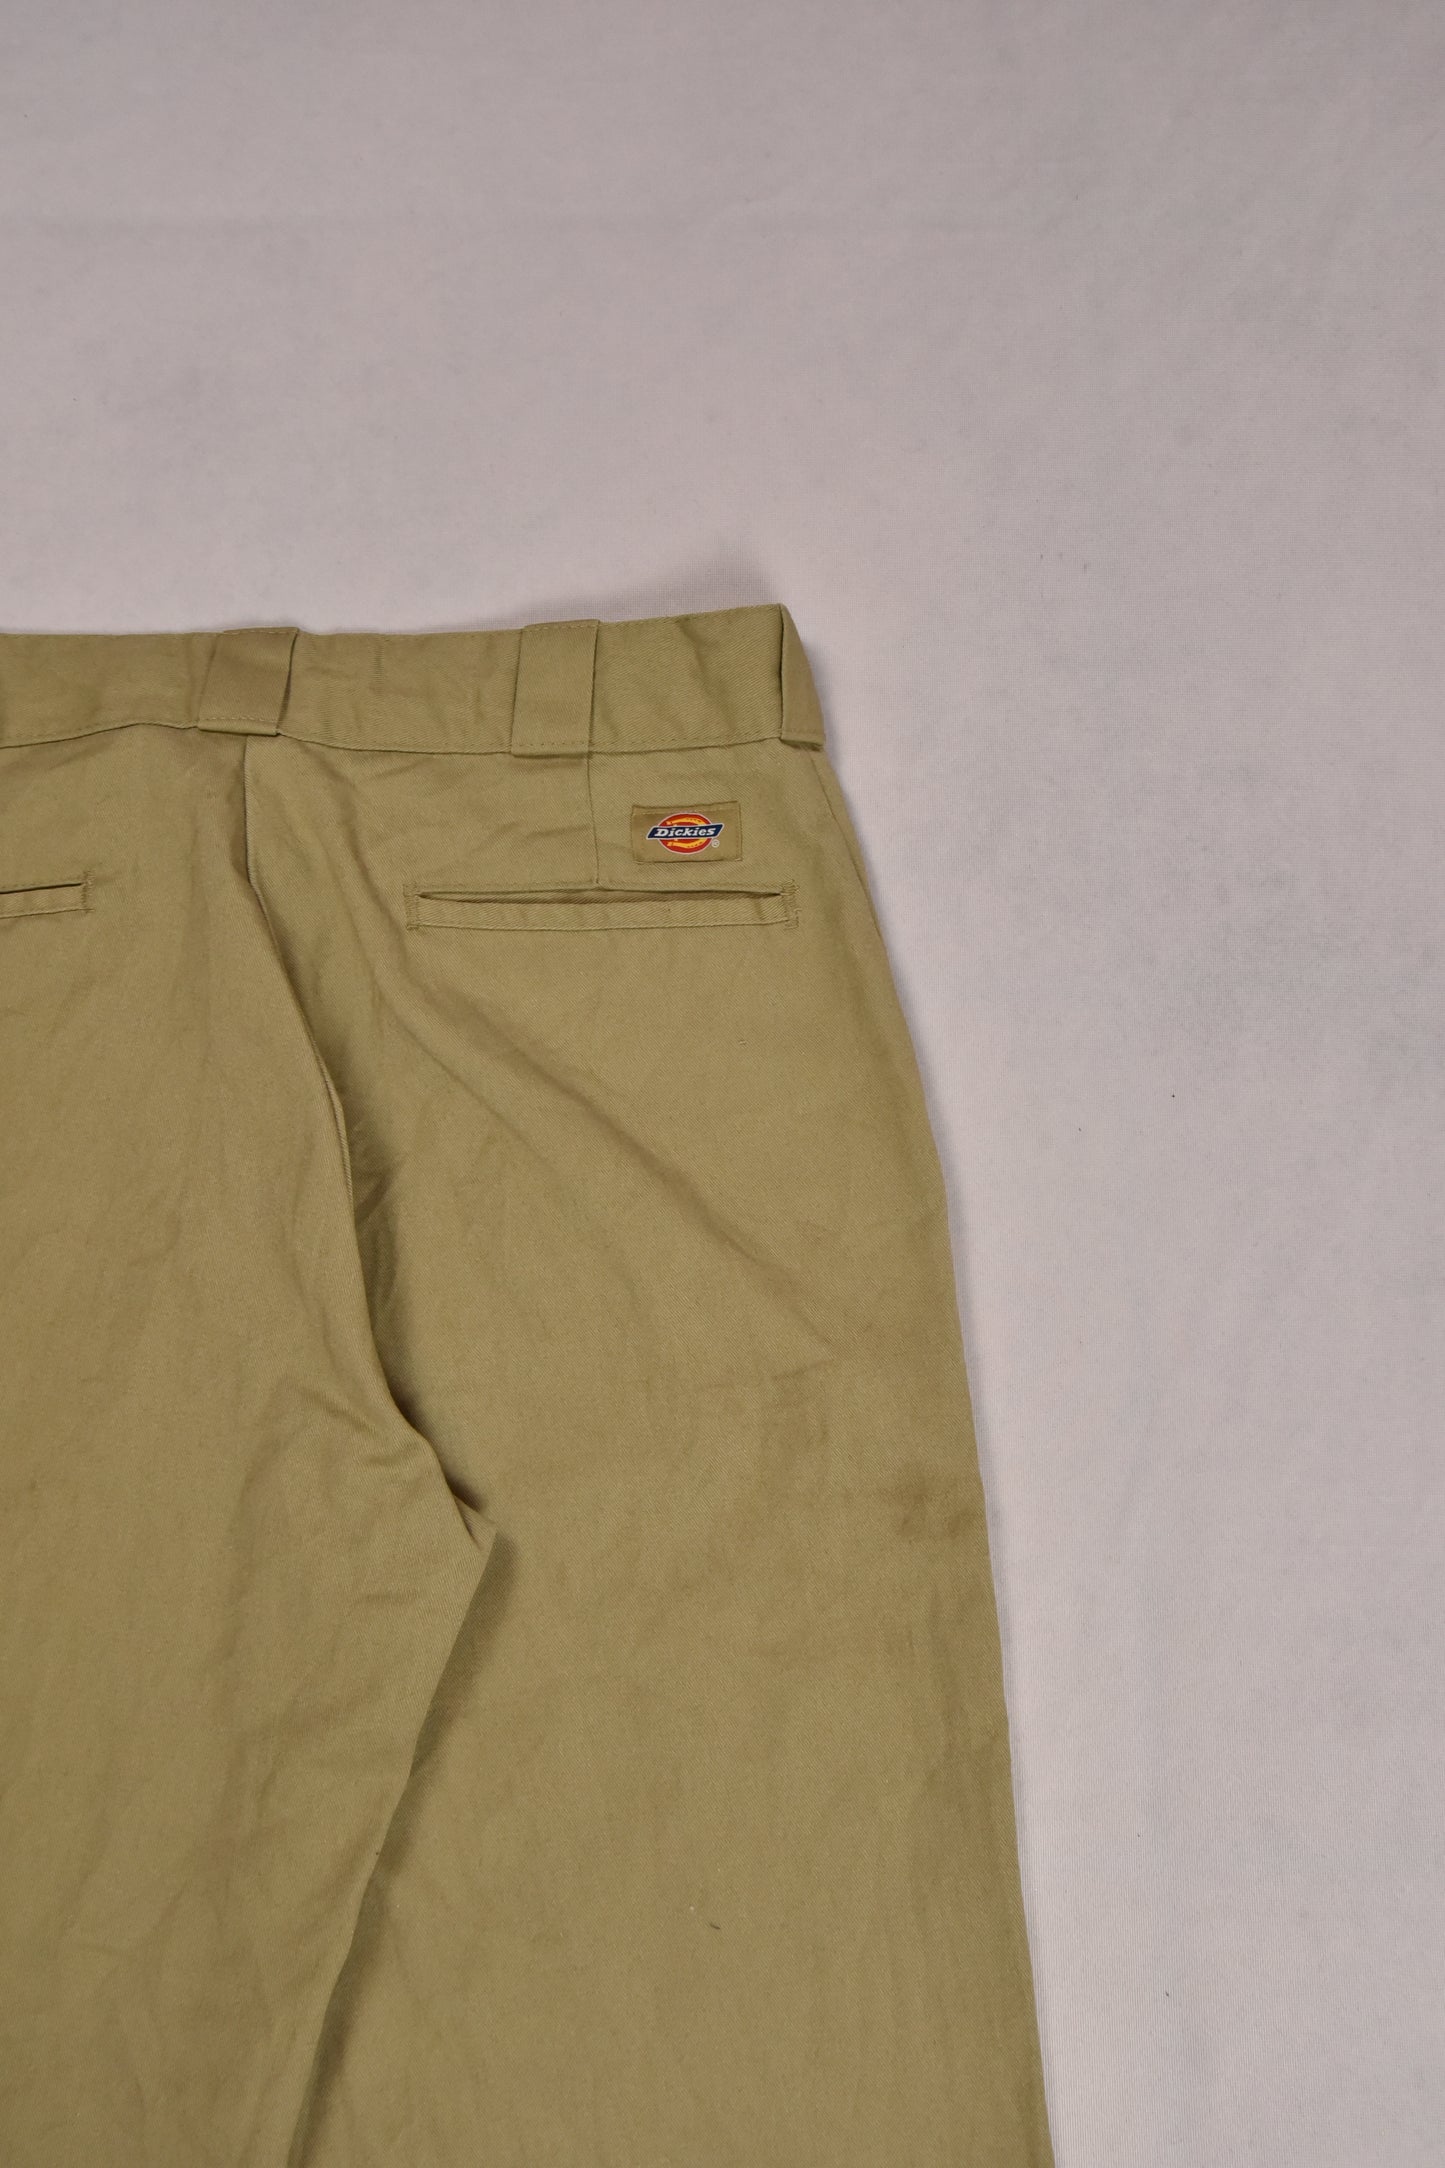 Vintage Dickies 874 pants / 33x32